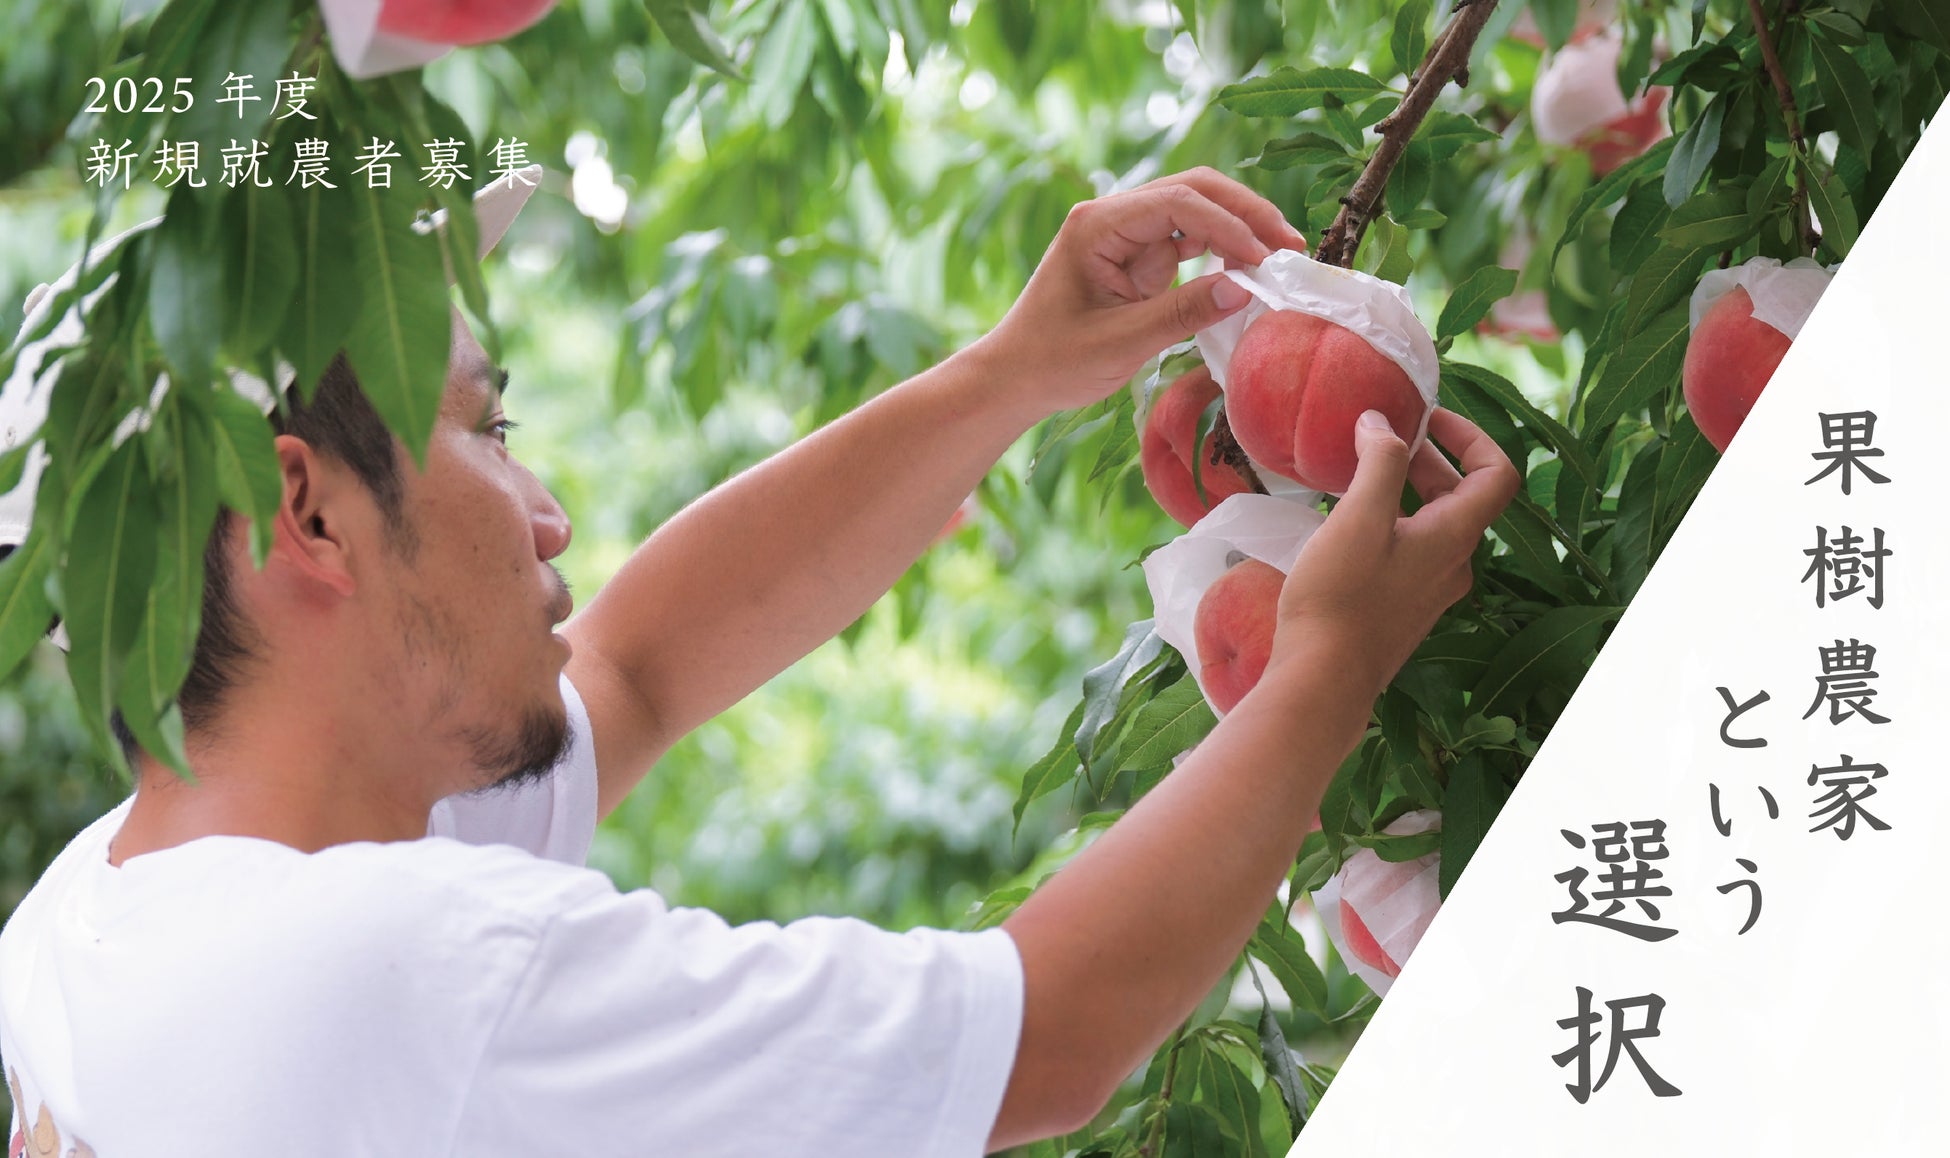 果物専門EC「Bonchi」が若手の新規就農者募集を開始。果樹農家を目指す全ての若者に、就農リスクや独立ハードルを大幅に抑えた全く新しい就農ルートを提案。